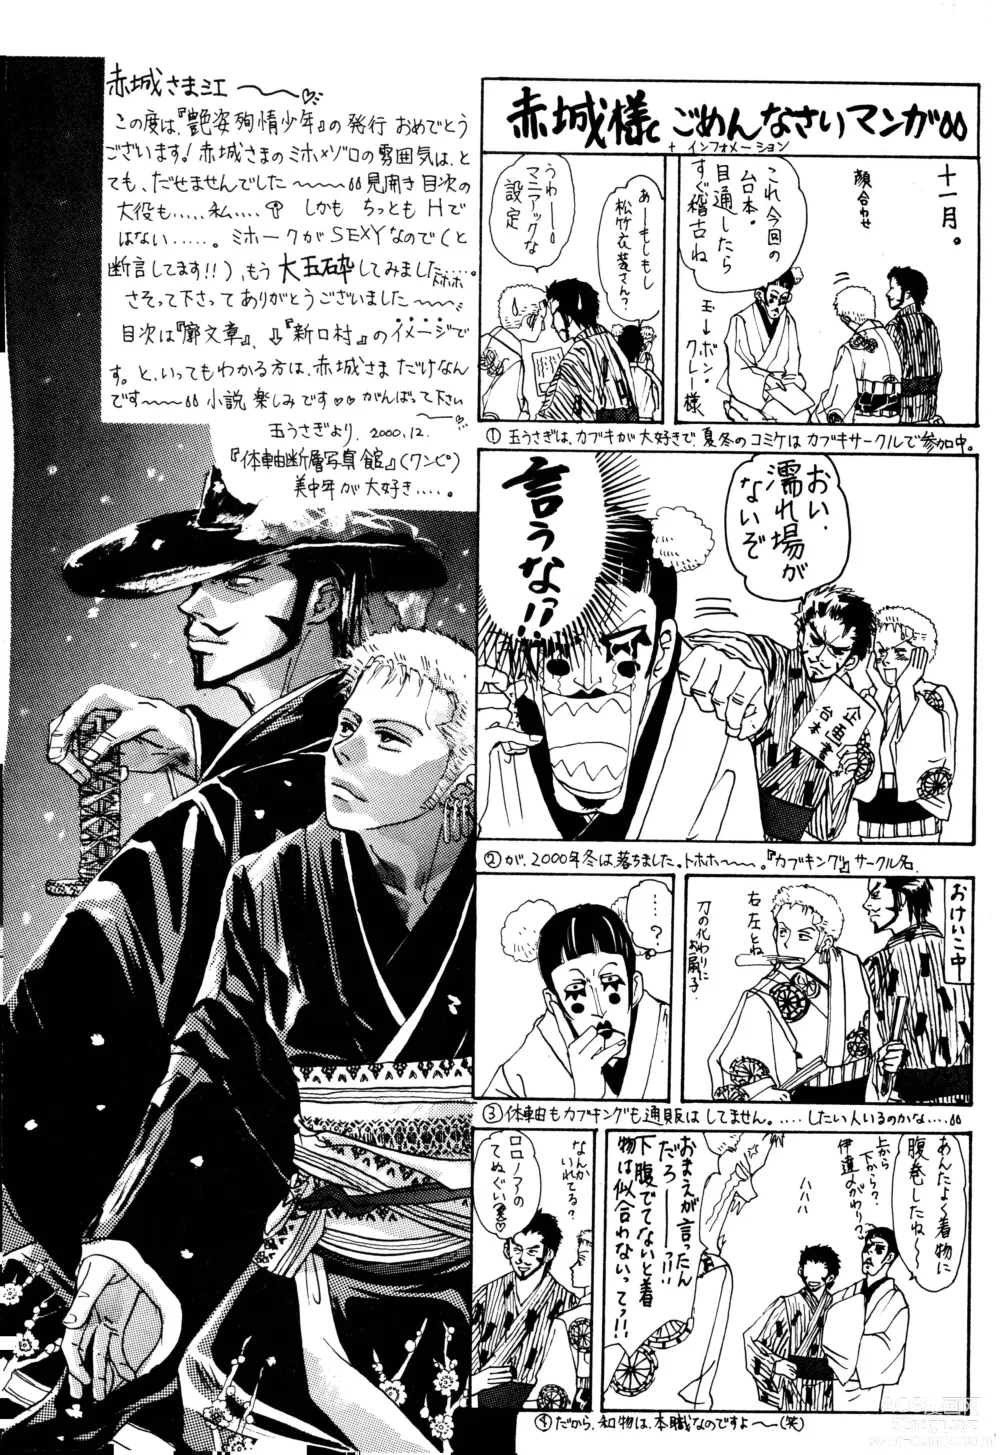 Page 94 of doujinshi Enshi Junjou Shounen